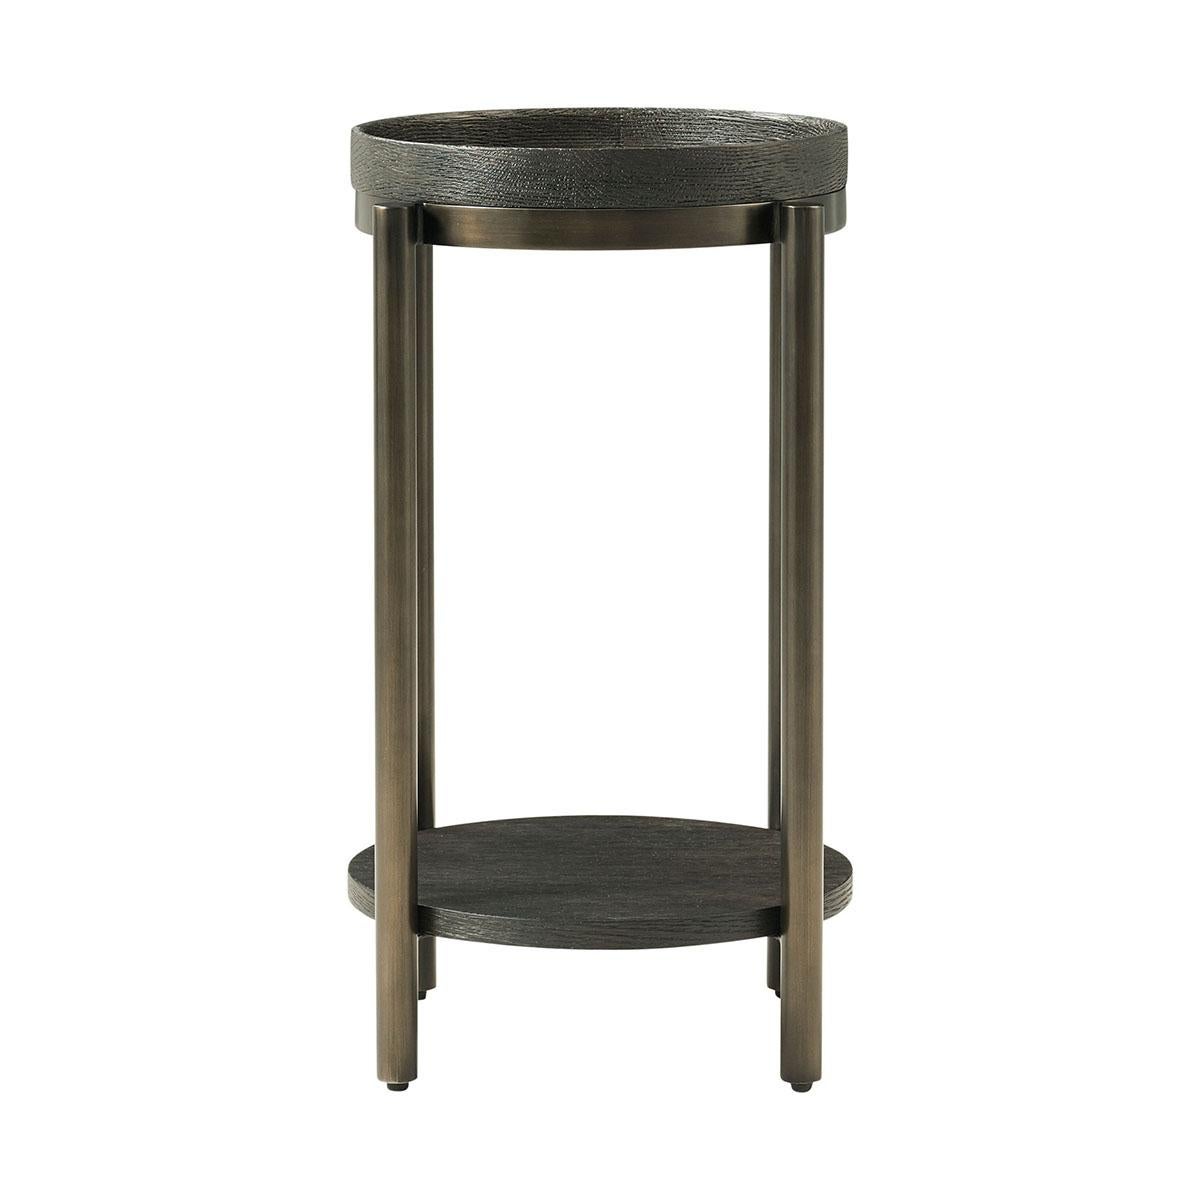 Mid-Century Modern Modern Round Accent Table - Dark For Sale